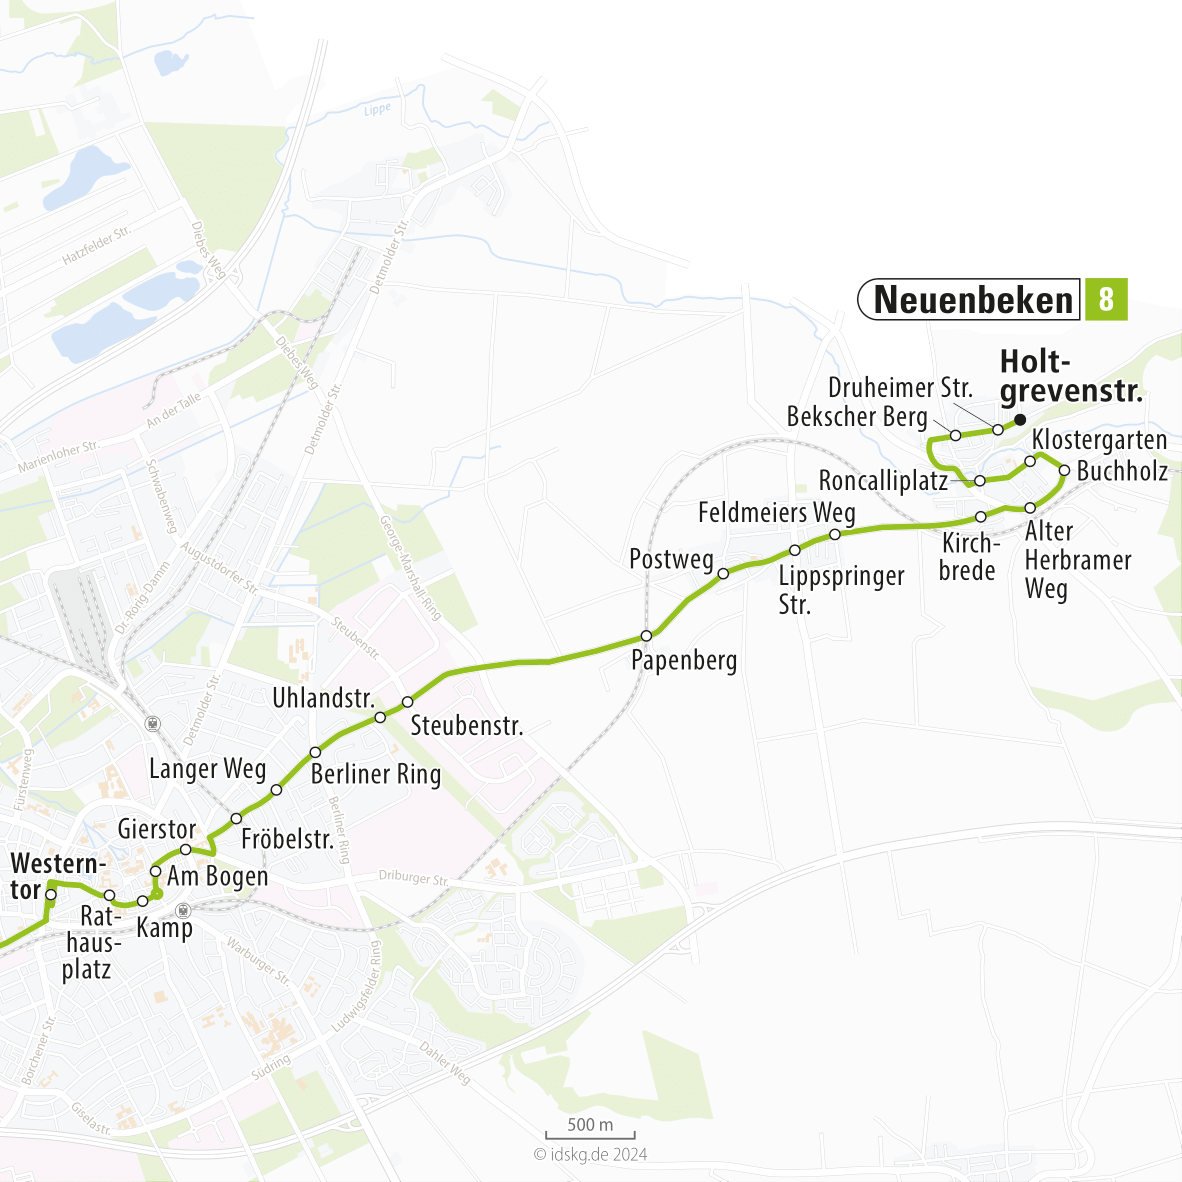 Kartenausschnitt der Linie 8 Westerntor bis Neuenbeken 15x15